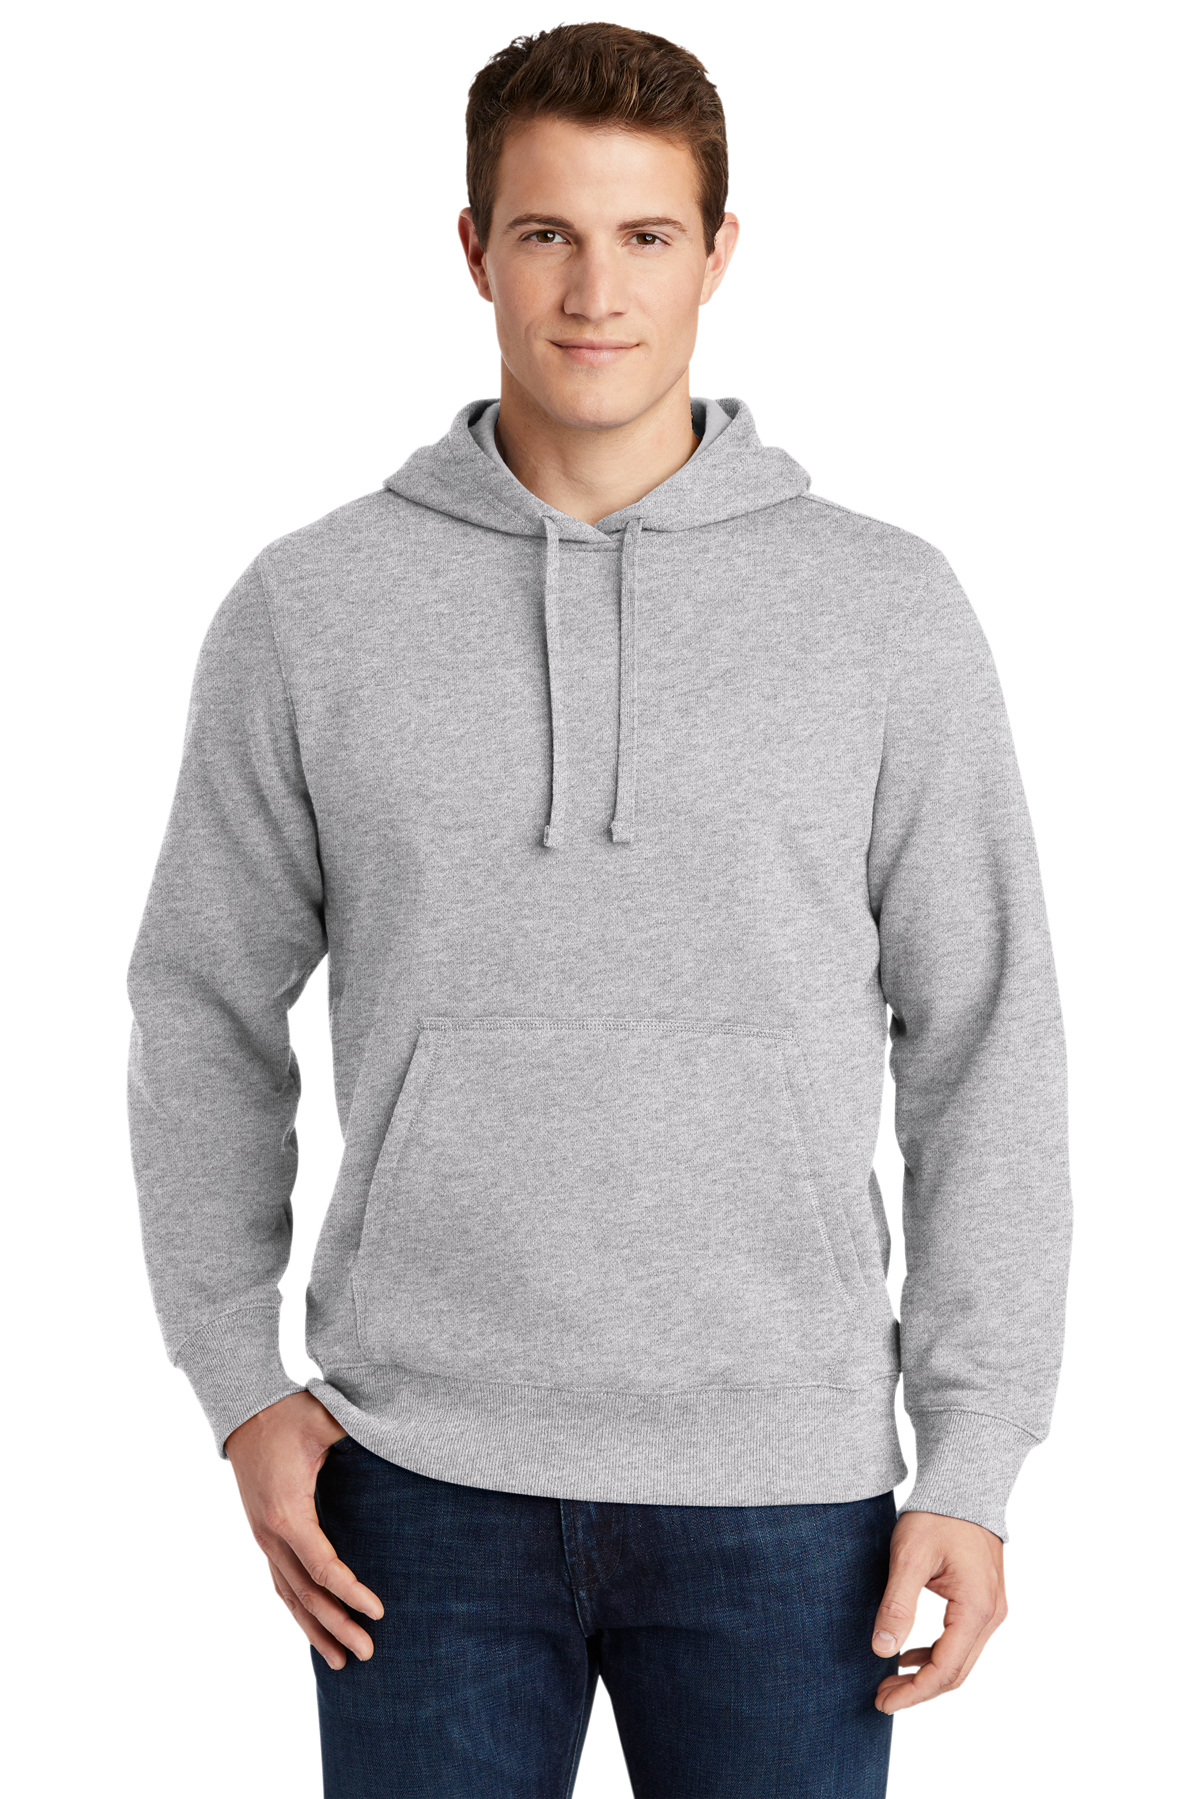 Sport-Tek Pullover Hooded Sweatshirt | Product | SanMar